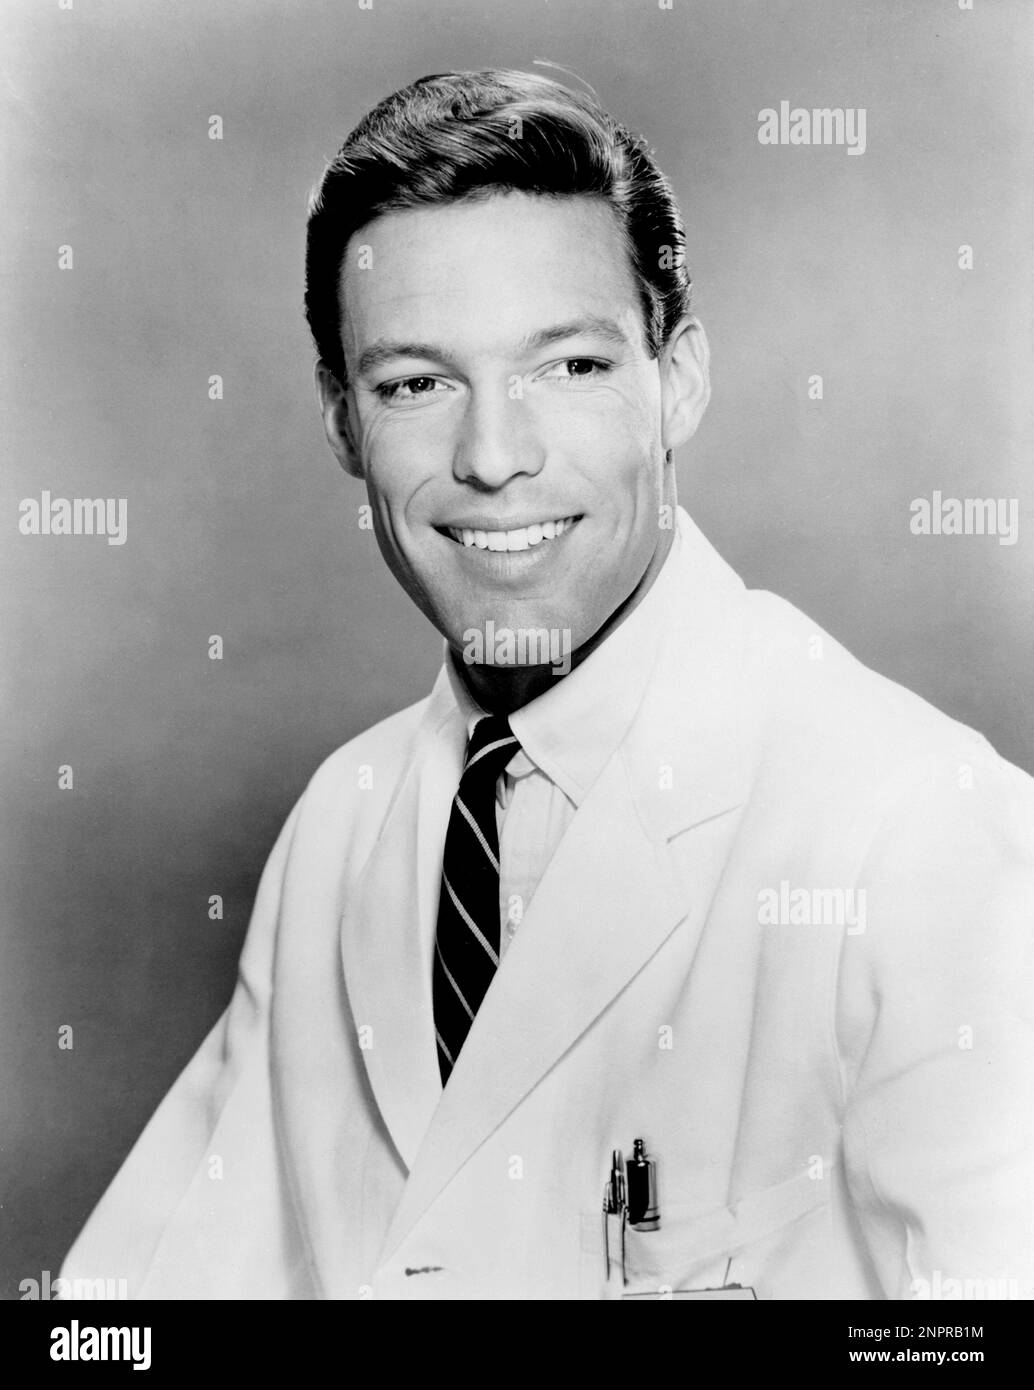 1963 ca.  : The actor RICHARD CHAMBERLAIN ( born 31 march 1934 , Beverly Hills , Los Angeles ) in Tv Series Dr. KILDARE ( 1961 - 1966 ) by Jack Arnold  - MOVIE - FILM - CINEMA - TELEVISION - TELEVISIONE - ritratto - portrait - smile - sorriso - velluto - velvet - tie - cravatta  - collar - colletto - penn - biro - stilografica - camice da dottore - medico - GAY - homosexuality - homosexual - omosessuale - omosessualità ----  Archivio GBB Stock Photo